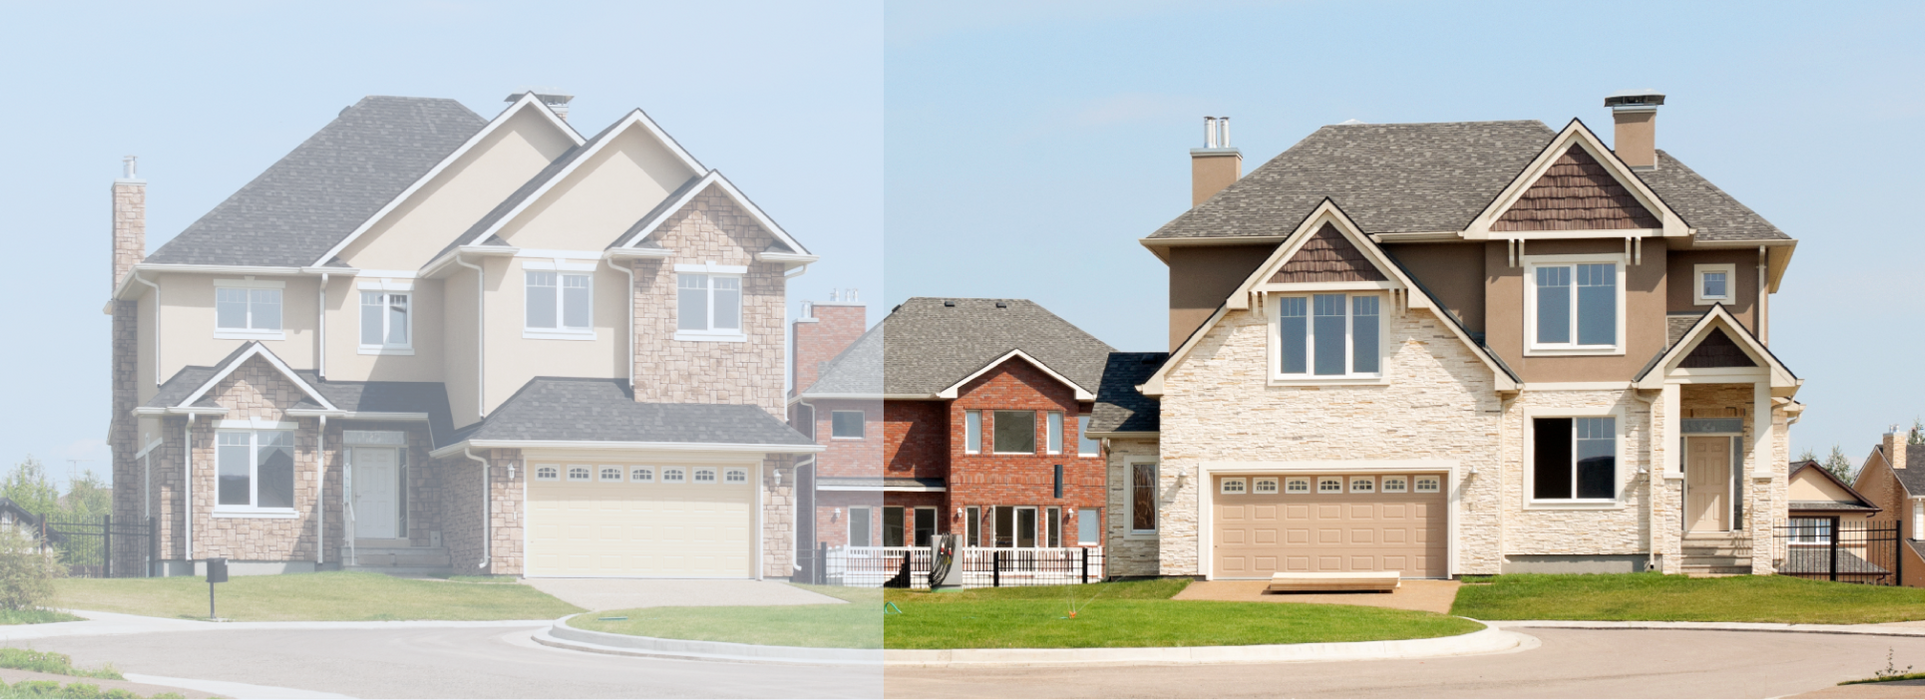 Smart Home Change Real Estate - ce que les consommateurs apprécient le plus